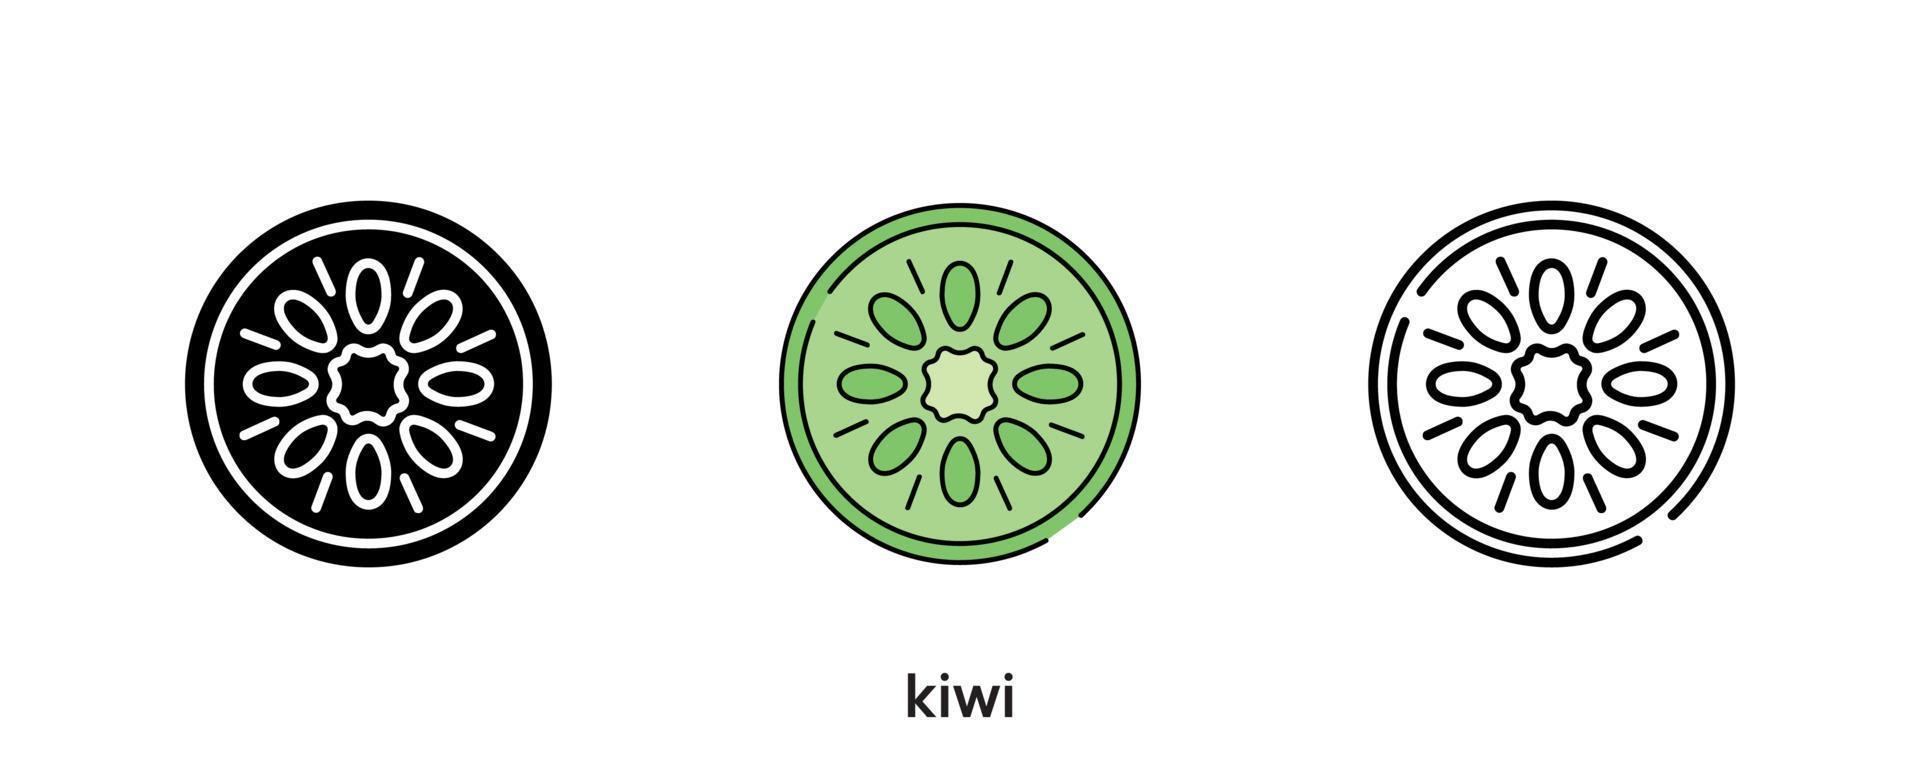 conception d'icône de kiwi. icône de kiwi en silhouette, colorée et linéaire. illustration vectorielle de ligne d'icône kiwi isolée sur un fond propre pour la conception du logo de votre application mobile Web. ligne moderne. vecteur